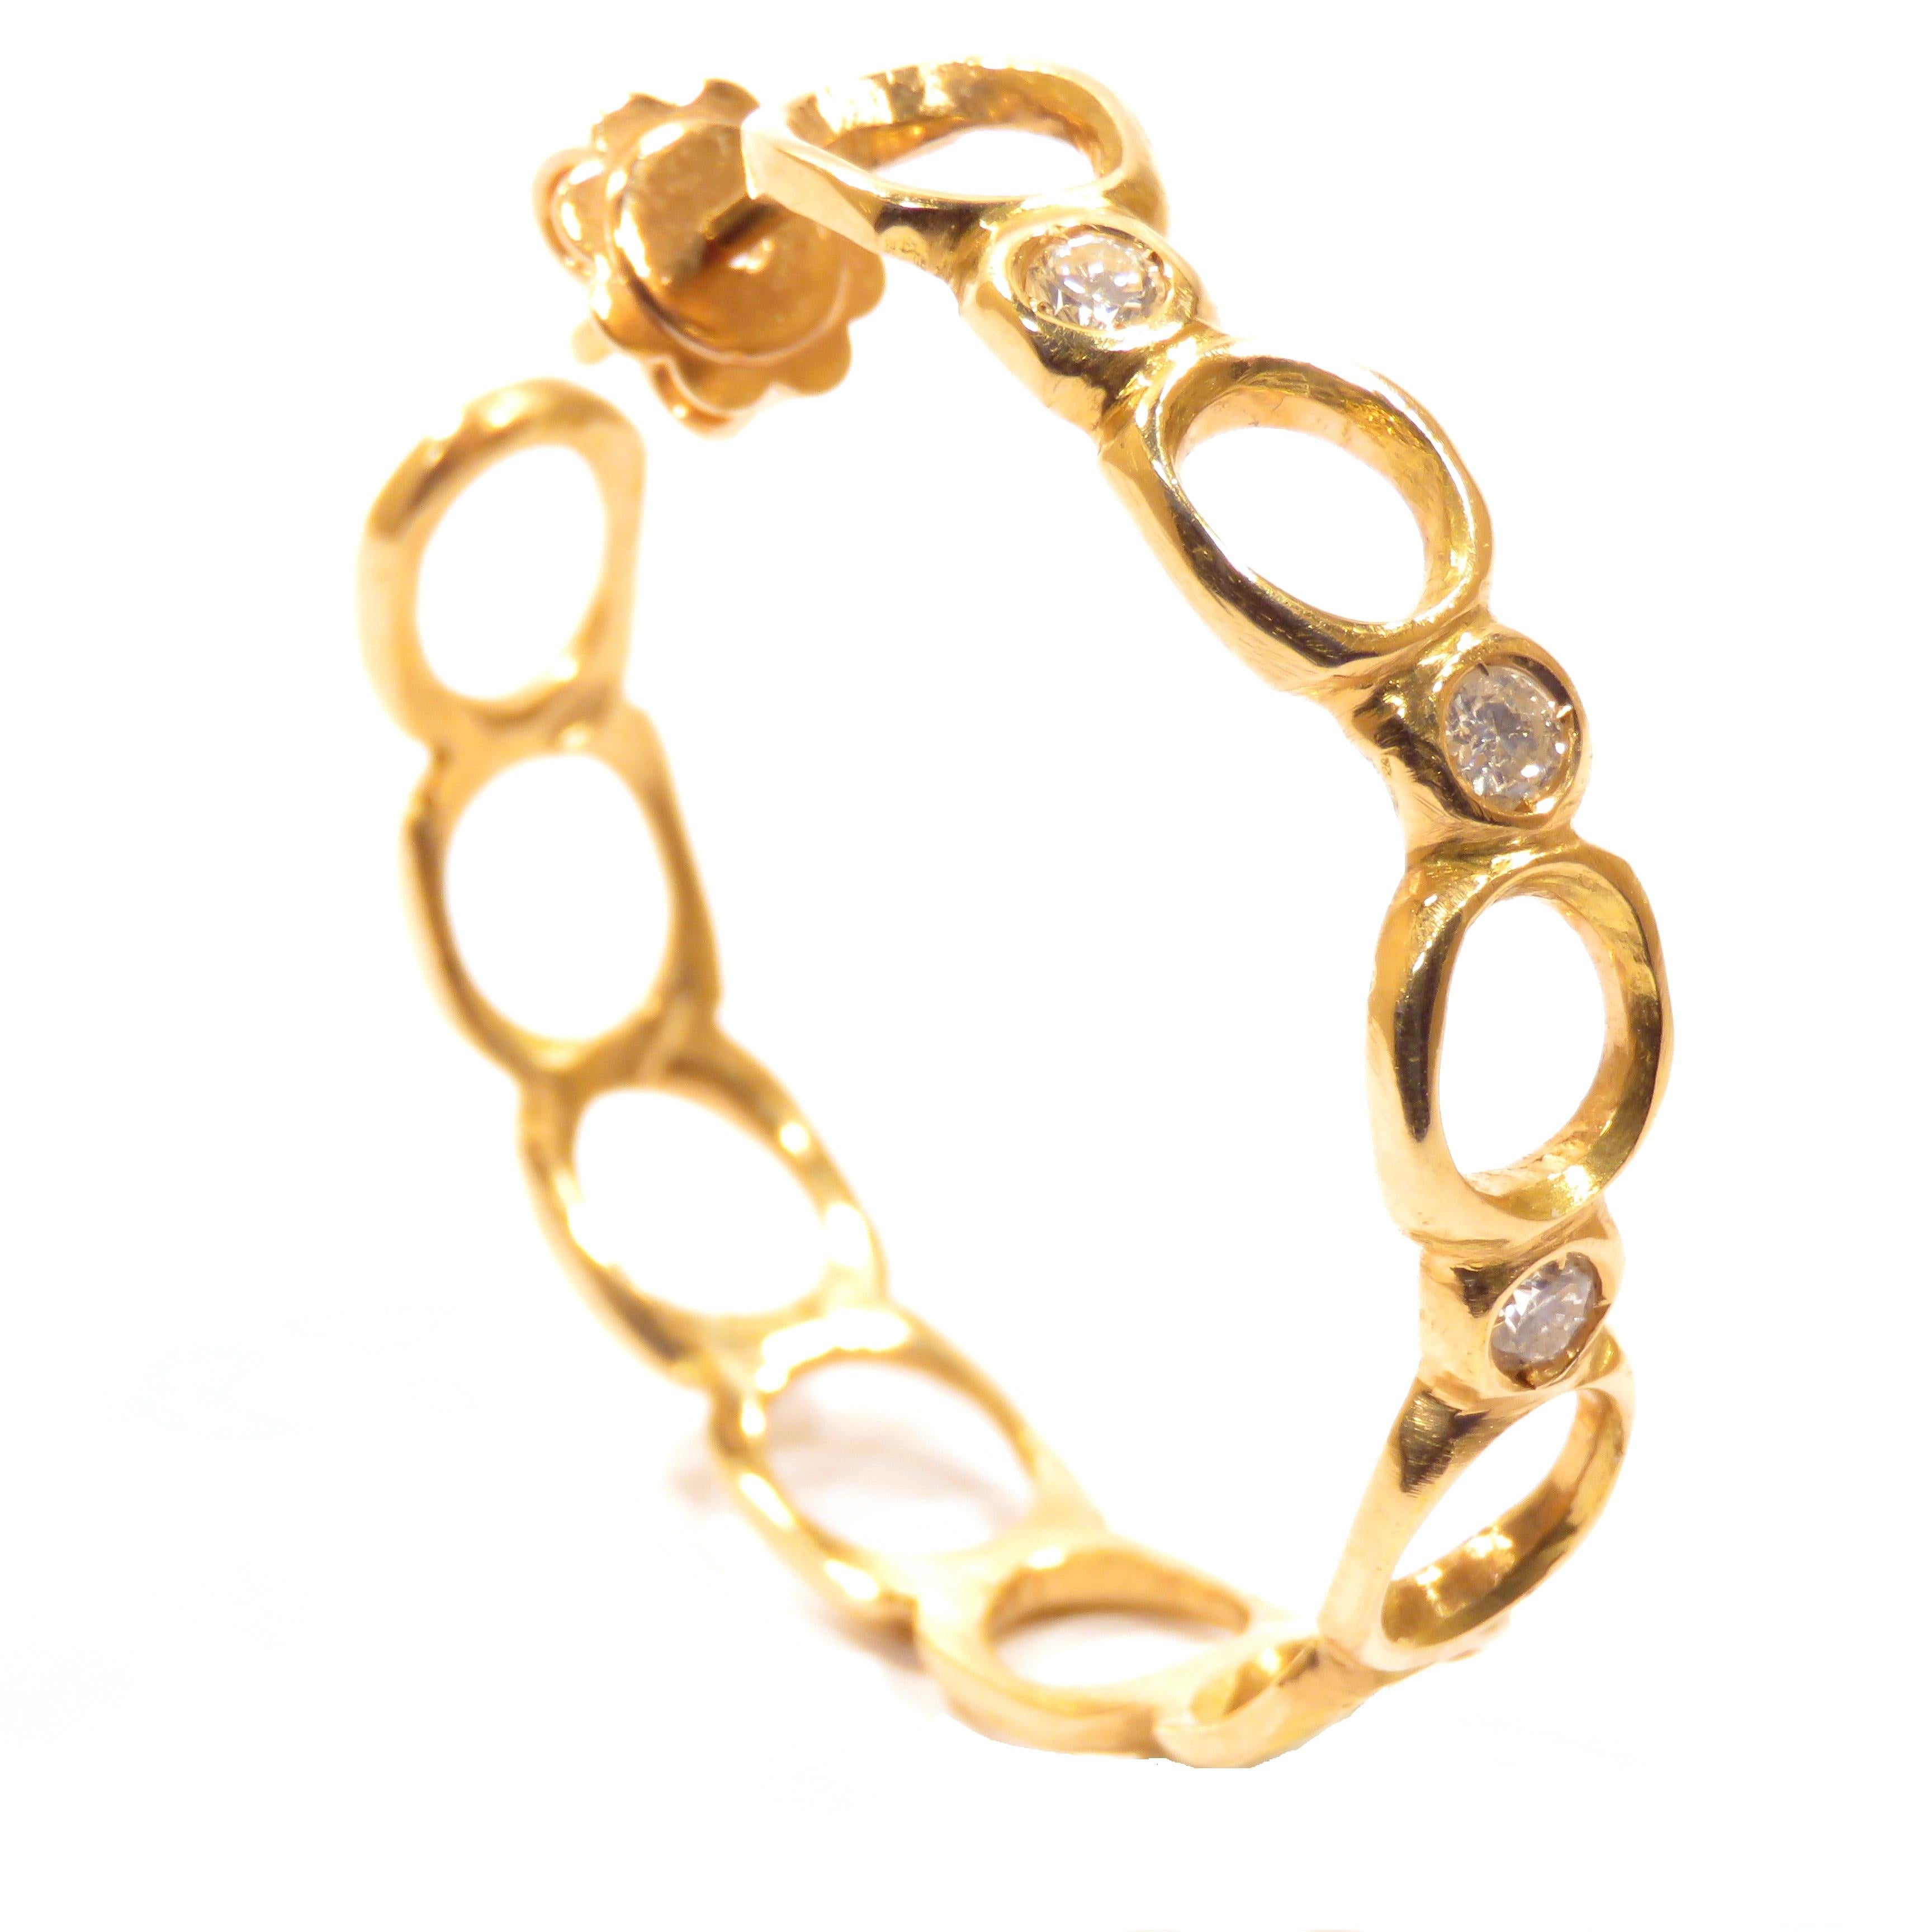 Women's 18 Karat Rose Gold Diamonds Hoop Earrings Handcrafted in Italy by Botta Gioielli